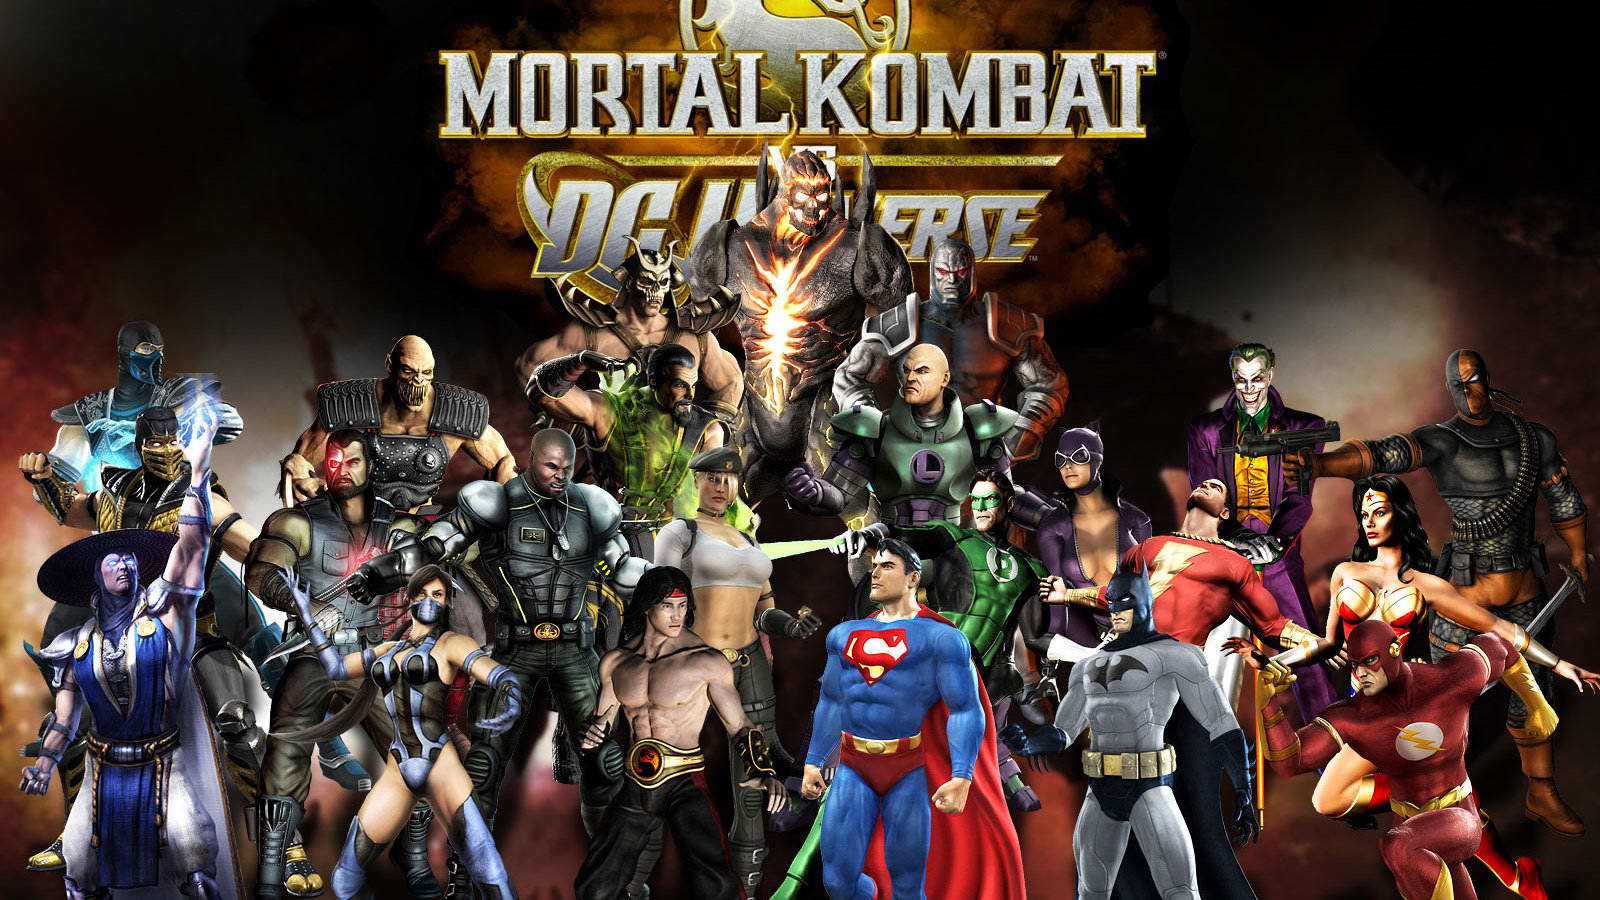 Mortal Kombat vs Street Fighter - кто сильнее? Самые лучшие кроссоверные файтинги.